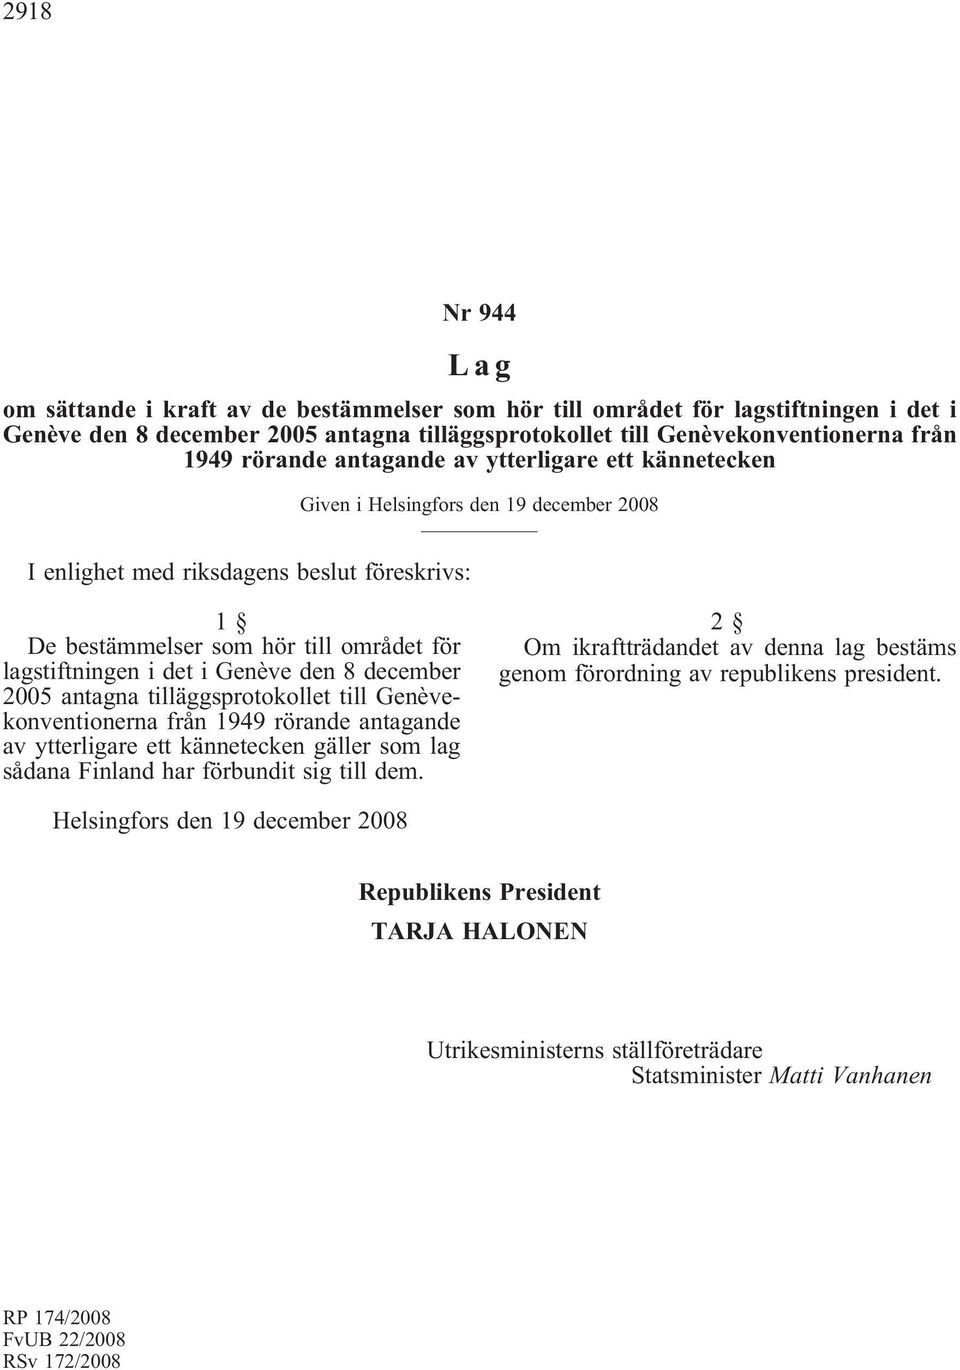 i Genève den 8 december 2005 antagna tilläggsprotokollet till Genèvekonventionerna från 1949 rörande antagande av ytterligare ett kännetecken gäller som lag sådana Finland har förbundit sig till dem.